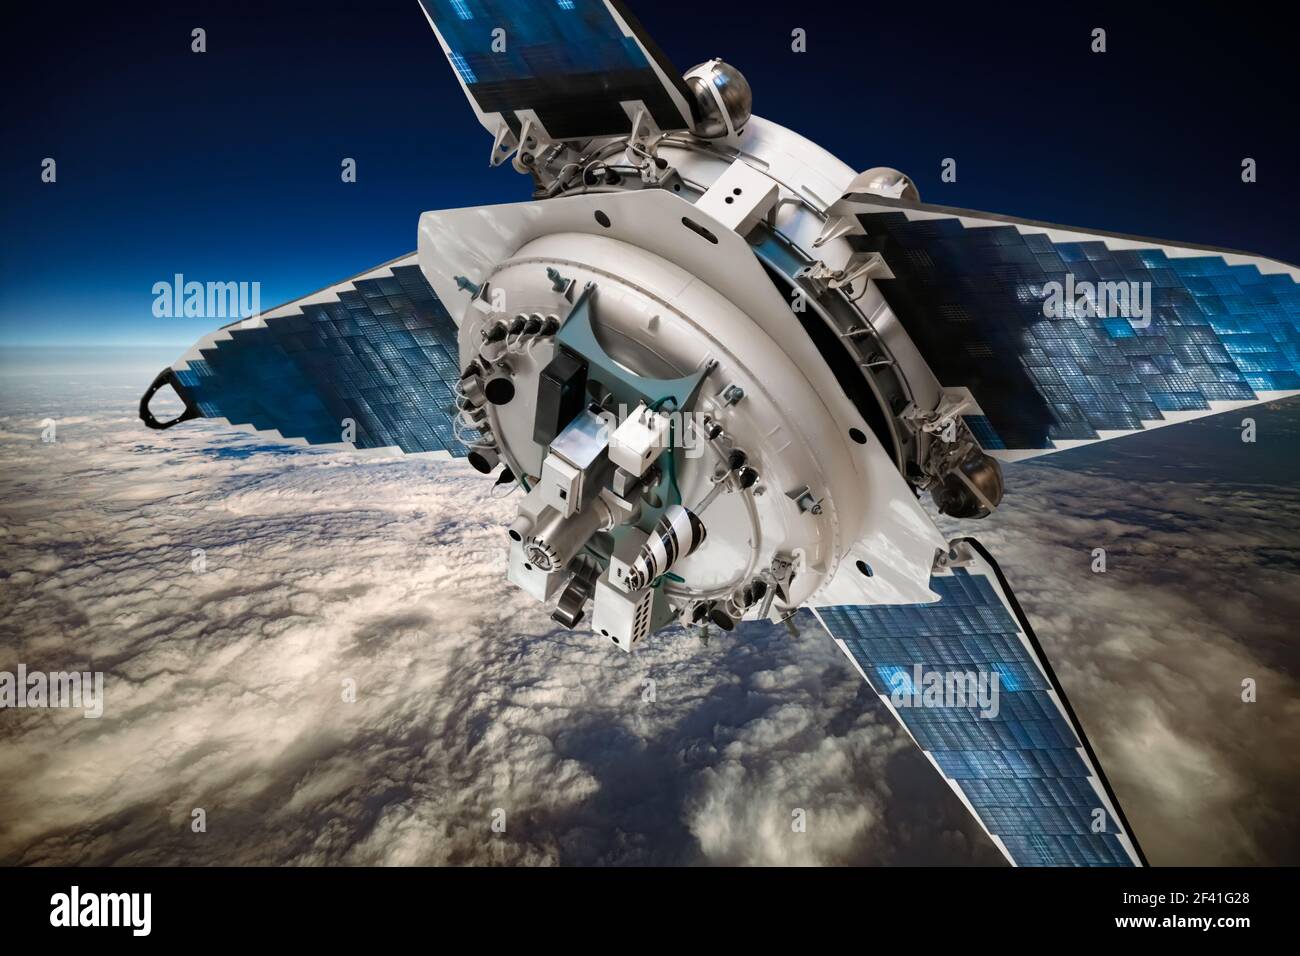 Raum-Satelliten die Erde umkreisen. Elemente des Bildes von der NASA eingerichtet. Stockfoto